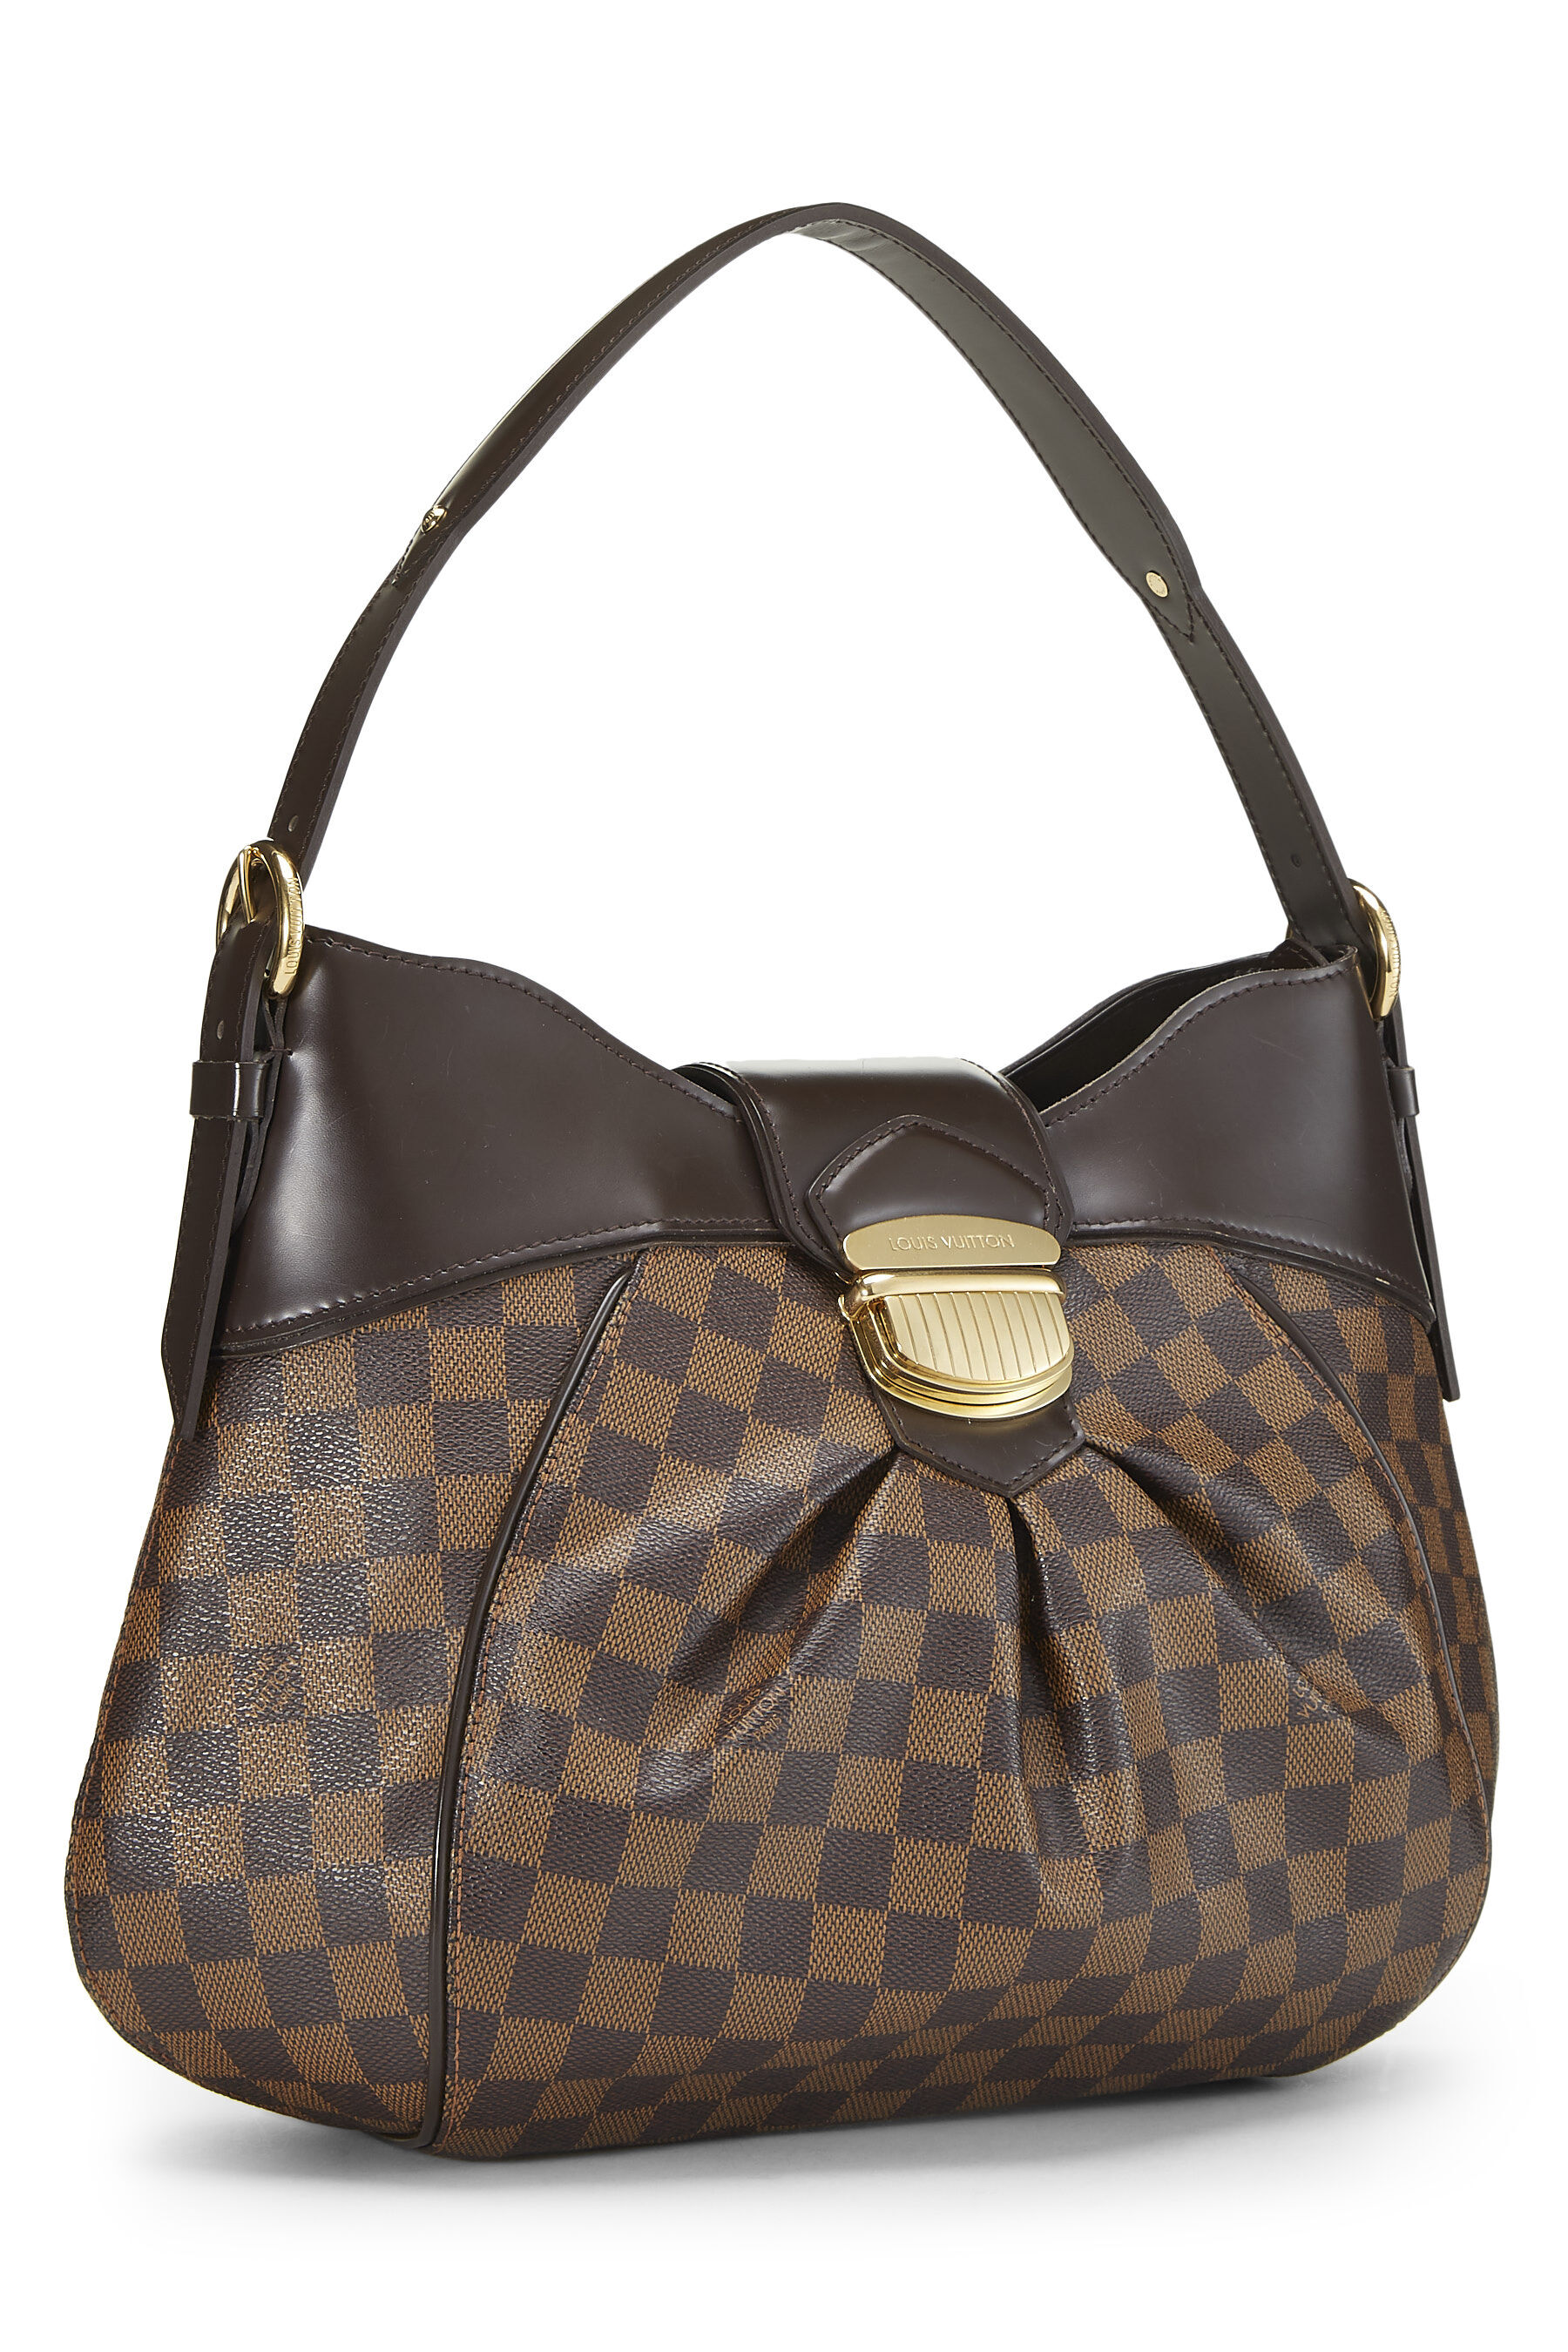 Shop Louis Vuitton Vintage Bags | LV Second Hand Bags | WGACA